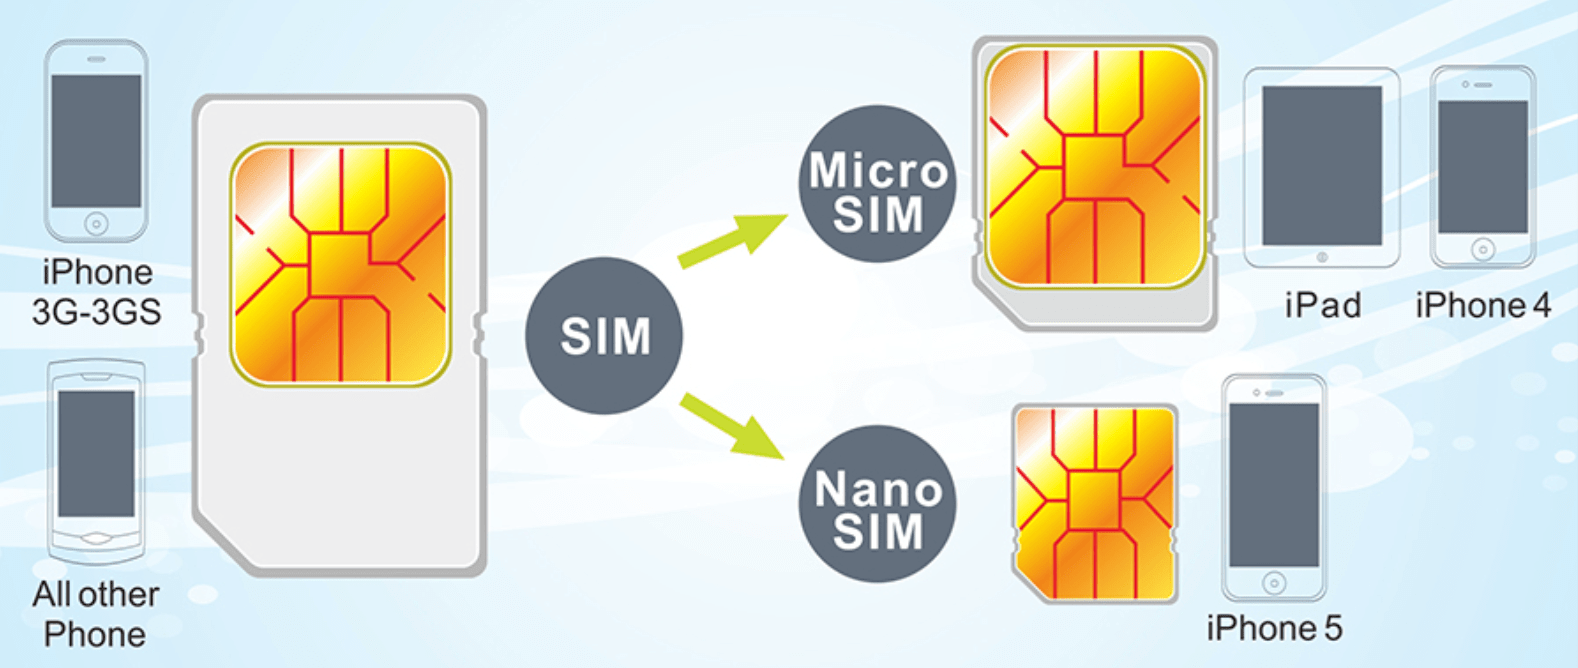 Копировать сим карты на телефон. Мини сим микро сим нано сим. Mini SIM Micro SIM отличия. SIM Mini Micro Nano. Micro-SIM И Nano-SIM карты отличия.